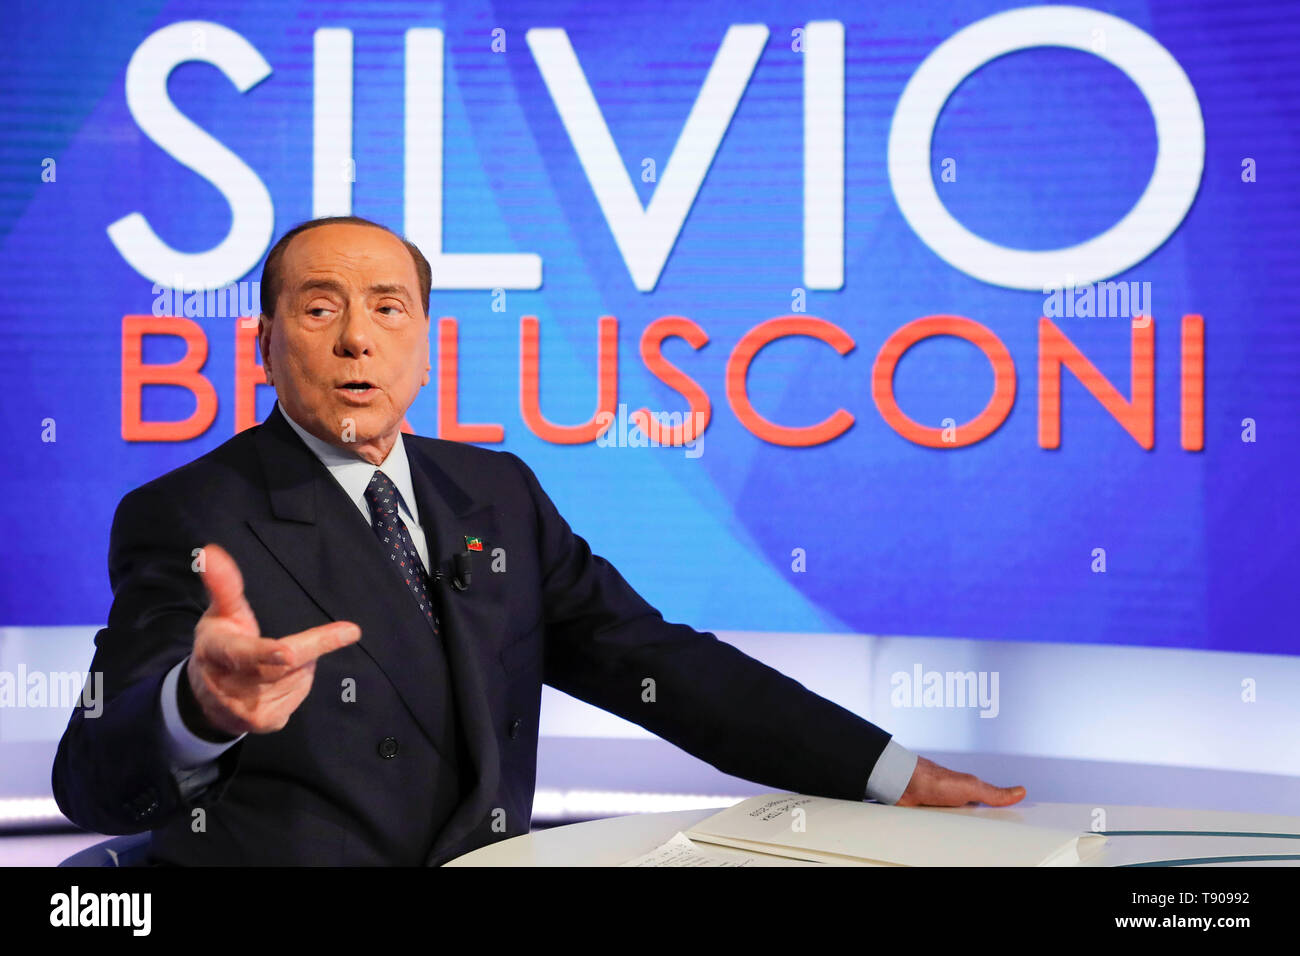 Italien, Rom, 14. Mai 2019: Silvio Berlusconi, der Führer der "Forza Italia" Partei, nimmt an Talk Show tv' L'aria che Tira' auf La 7 tv. Foto Remo Stockfoto